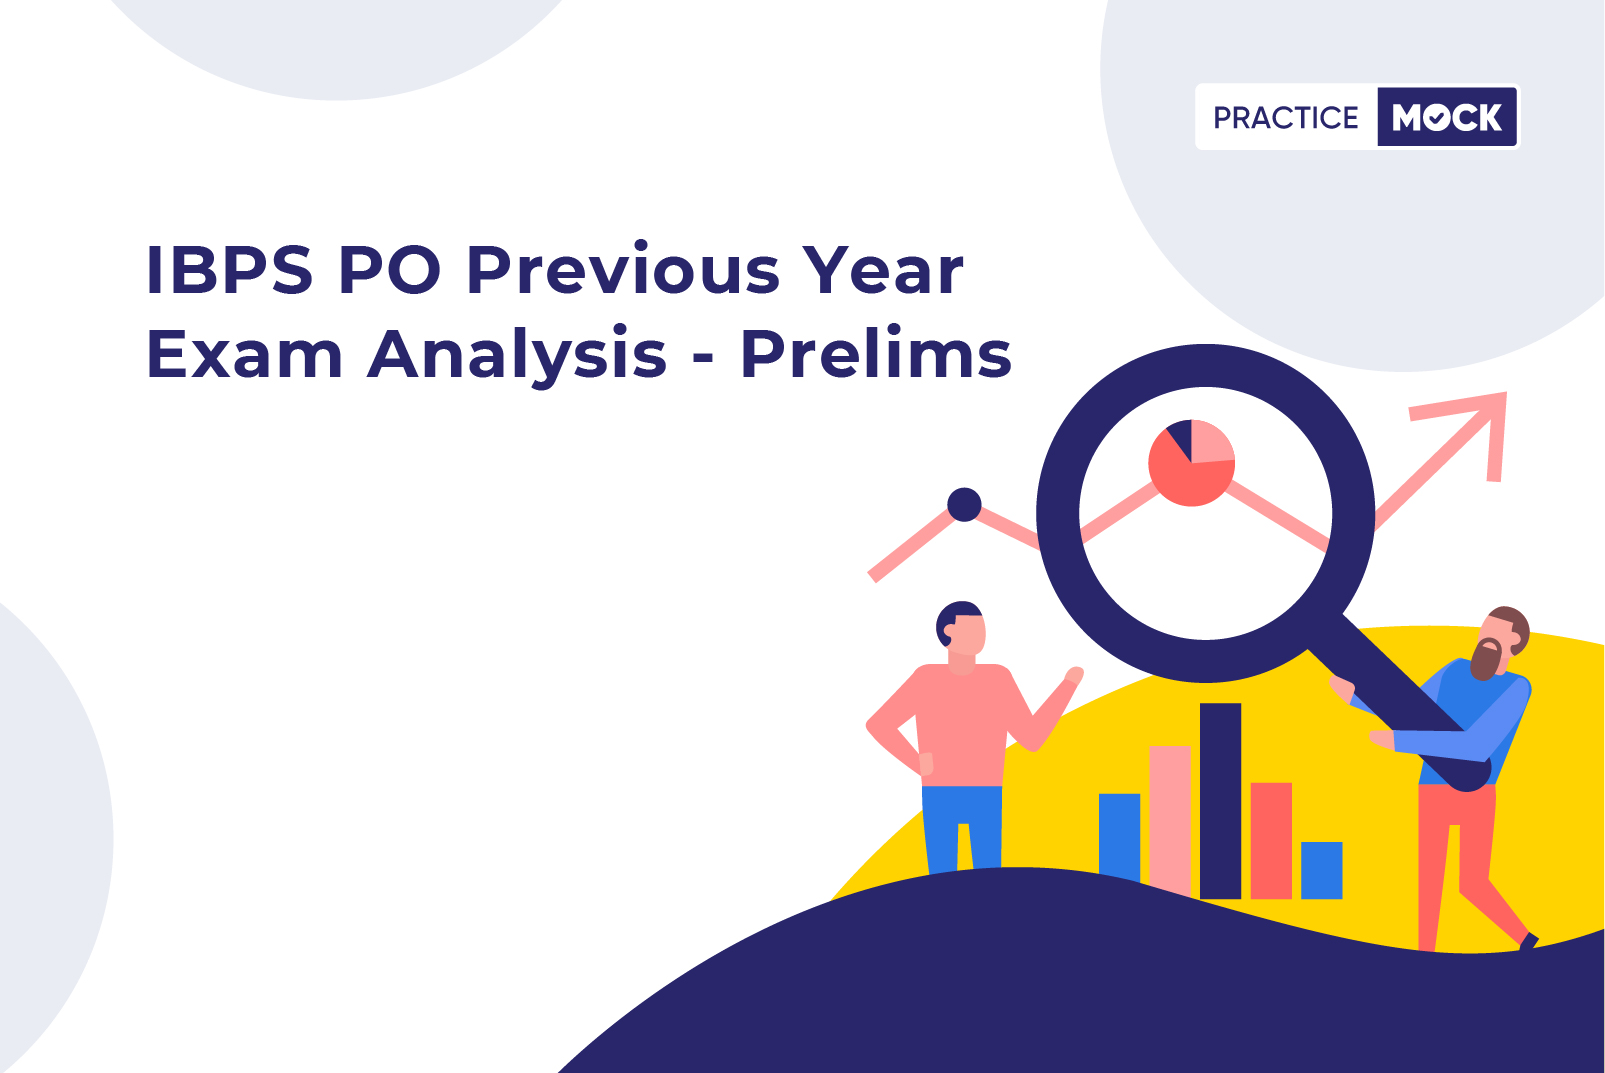 IBPS PO Previous Year Exam Analysis - Prelims